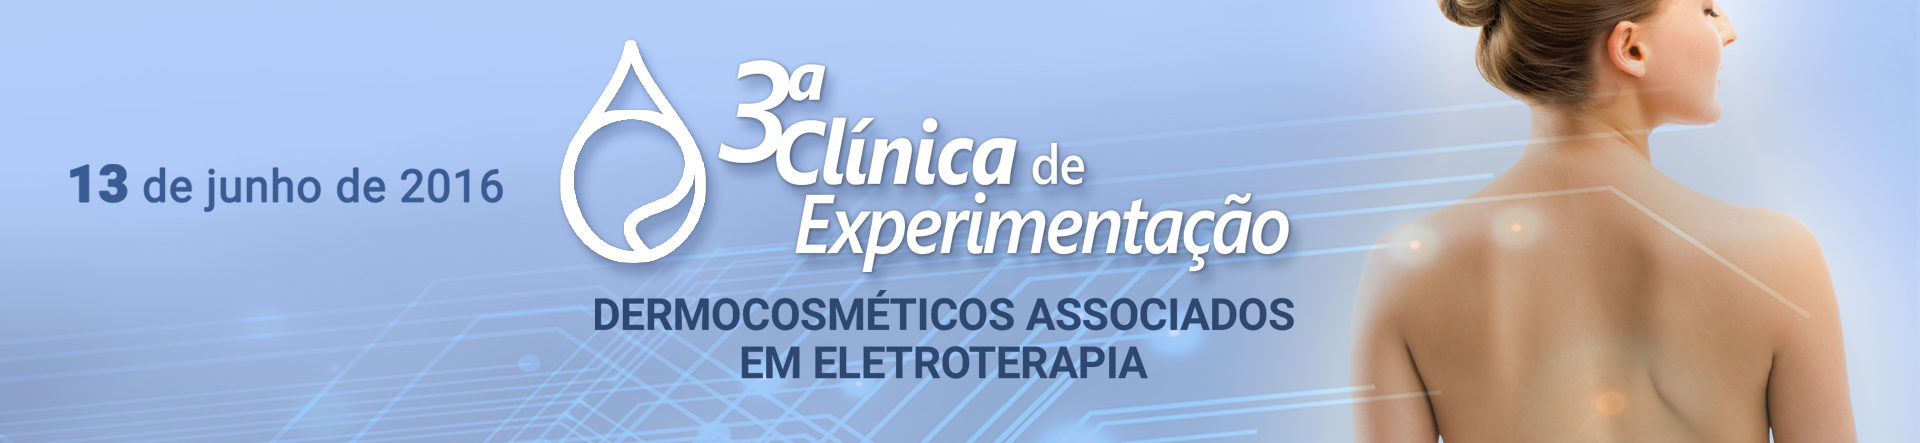 Dermocosméticos Associados em Eletroterapia